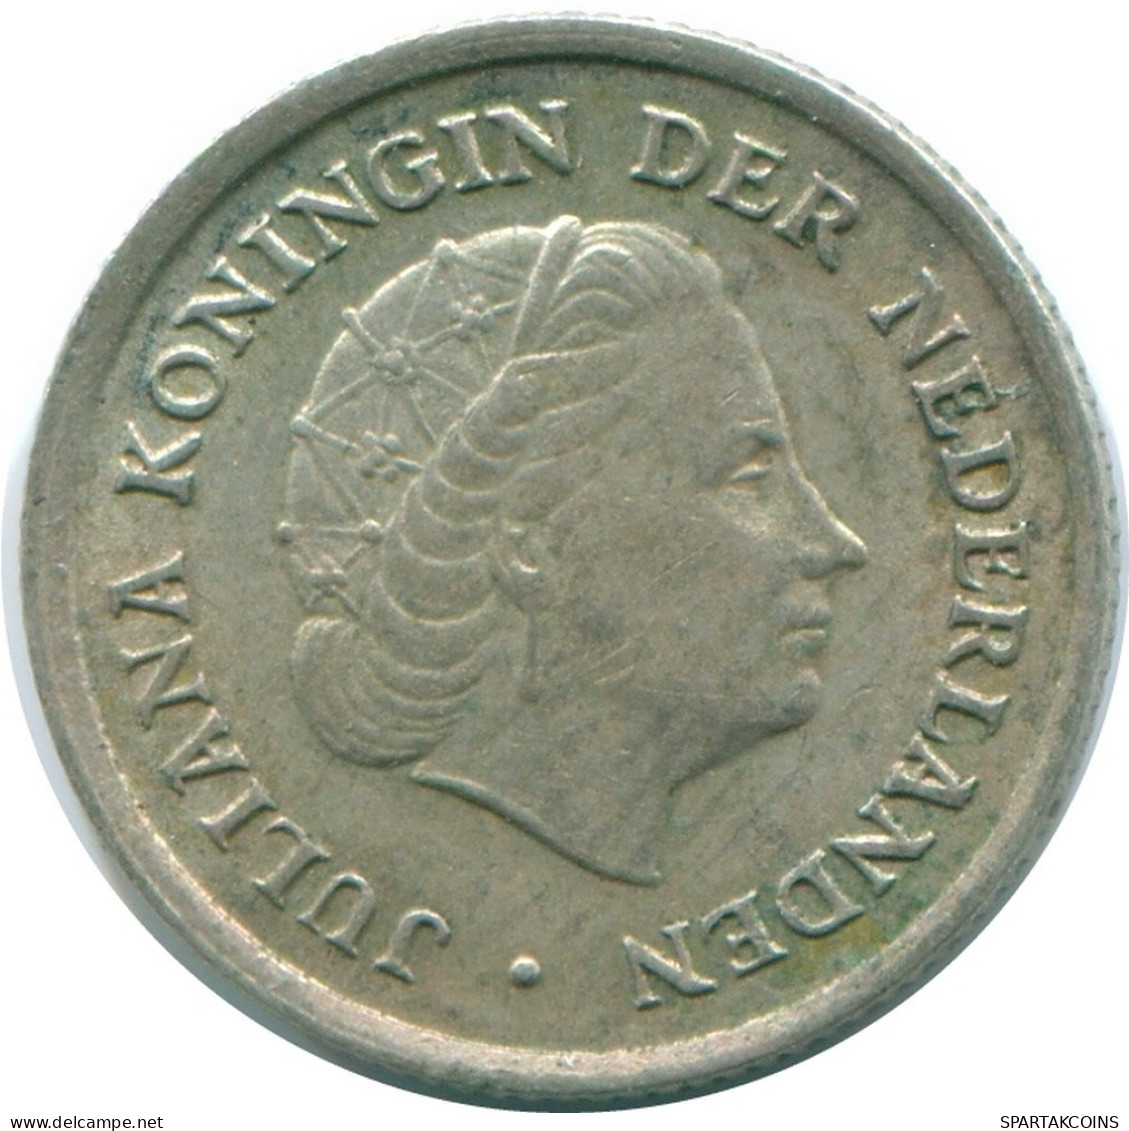 1/10 GULDEN 1970 NIEDERLÄNDISCHE ANTILLEN SILBER Koloniale Münze #NL13060.3.D.A - Antillas Neerlandesas